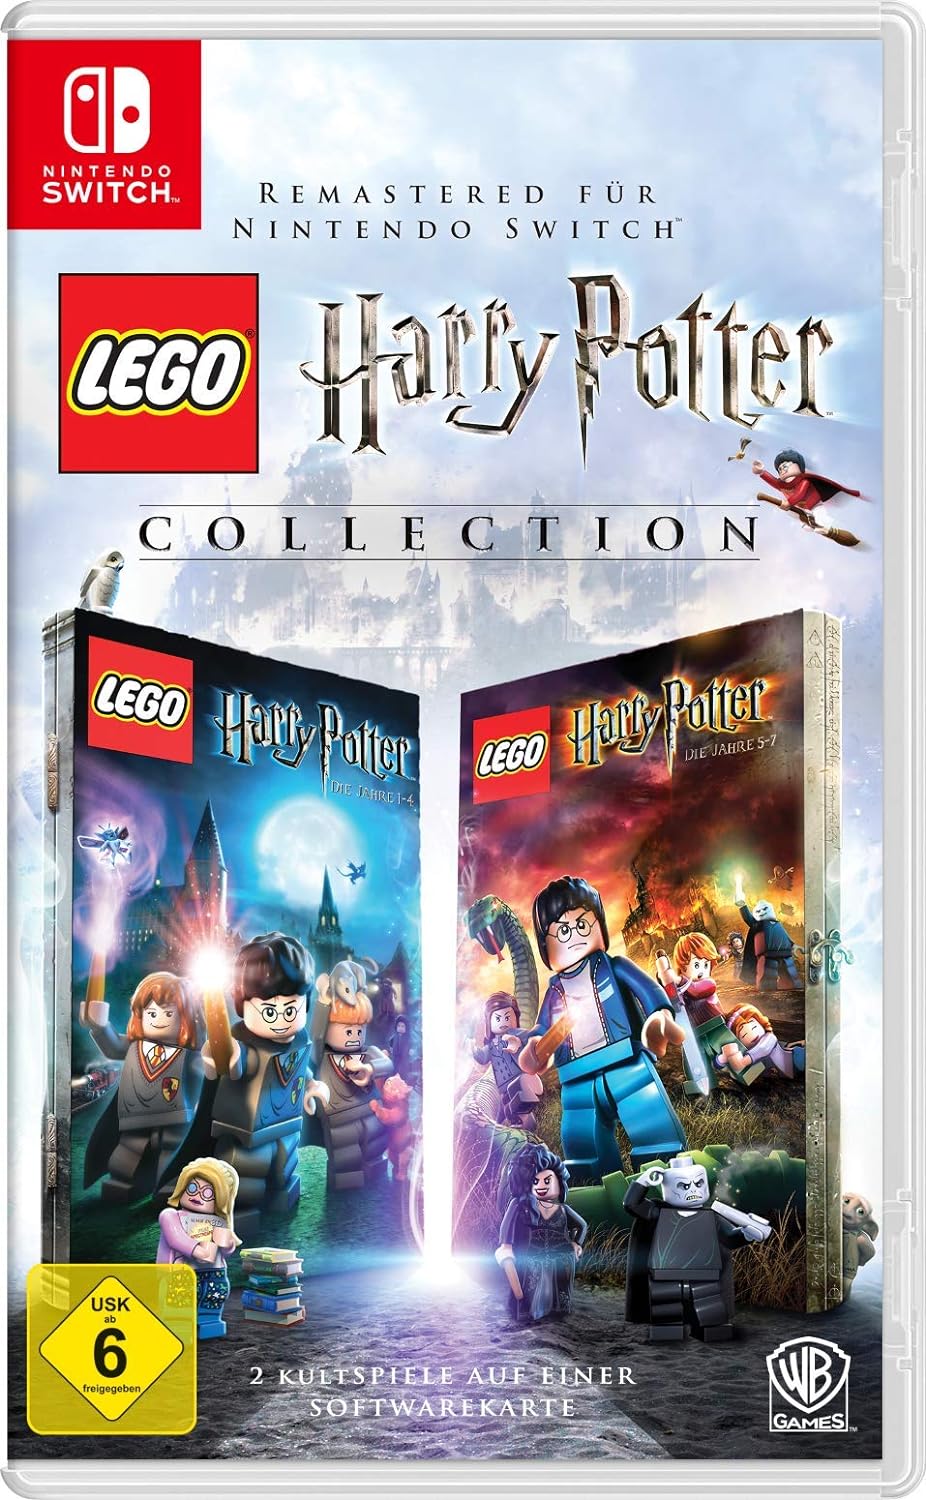 LEGO Harry Potter Collection - 2 Kultspiele auf einer Softwarekarte [Nintendo Switch]